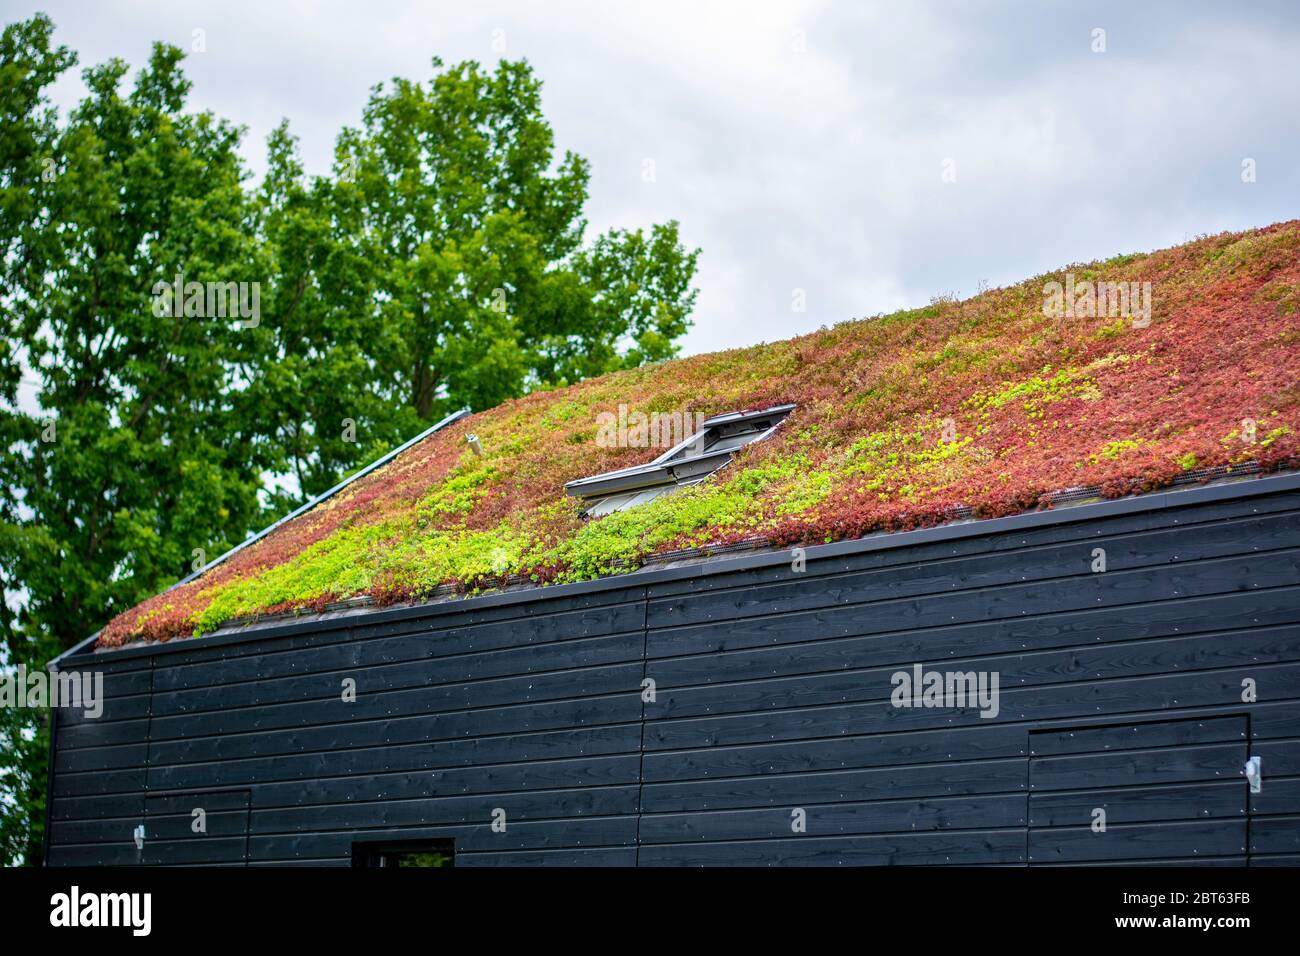 Gebäude mit einem grünen Dach komplett mit Vegetation bedeckt. Ausgedehntes grünes, nachhaltiges Sedum-Dach mit Sukkulenten. Dachbegrünung. Stockfoto